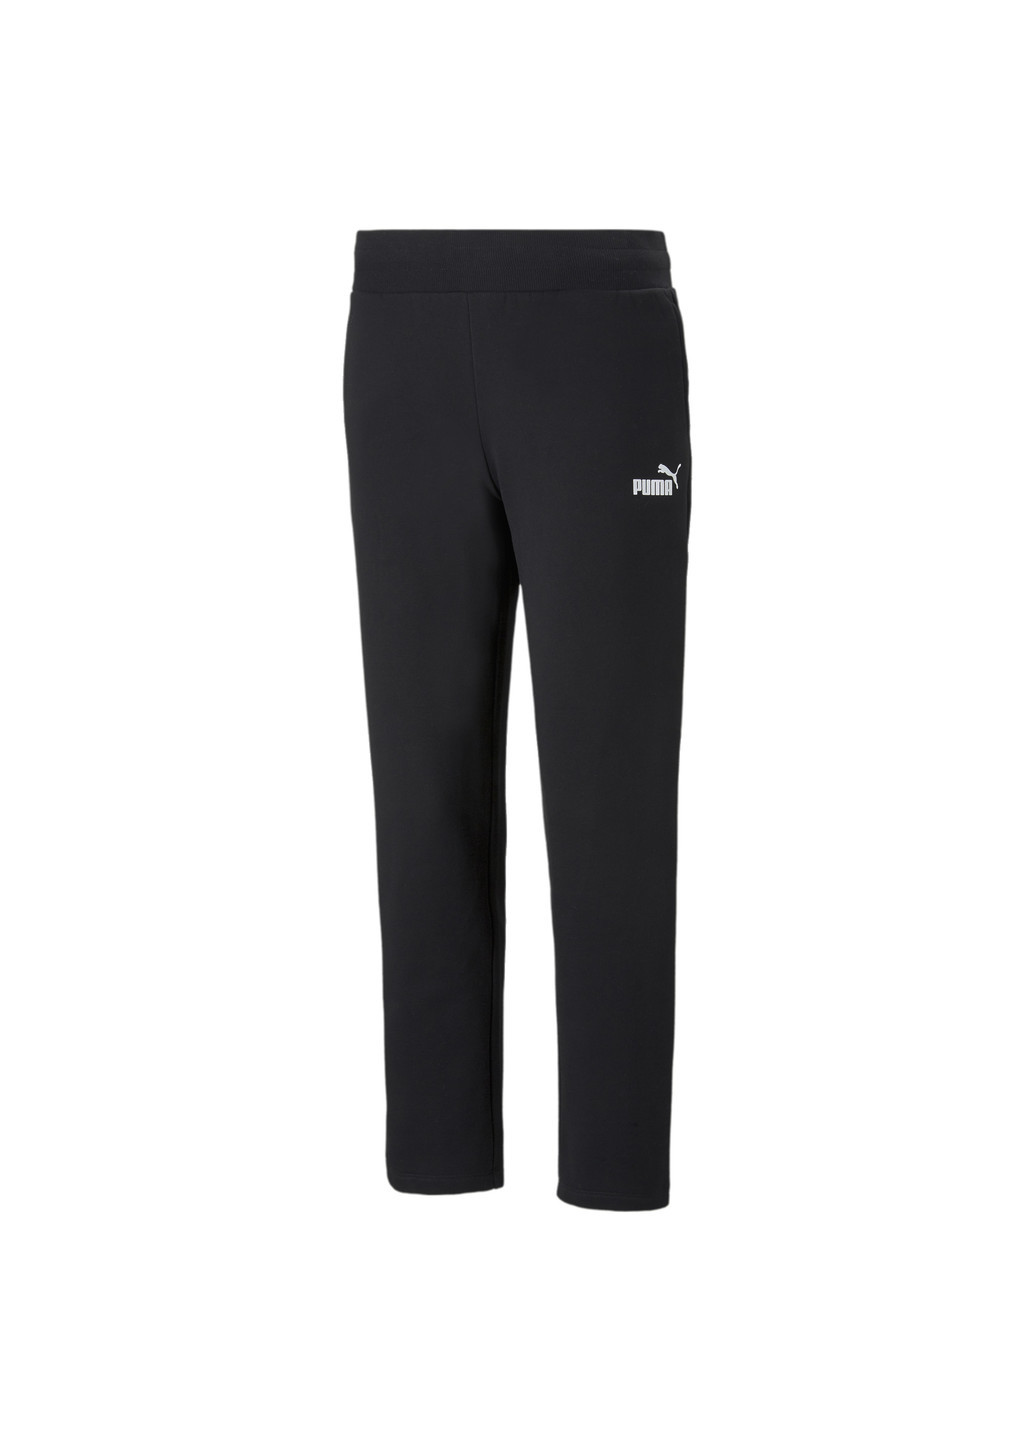 Штани Essentials Women's Sweatpants Puma однотонні чорні спортивні бавовна, поліестер, еластан